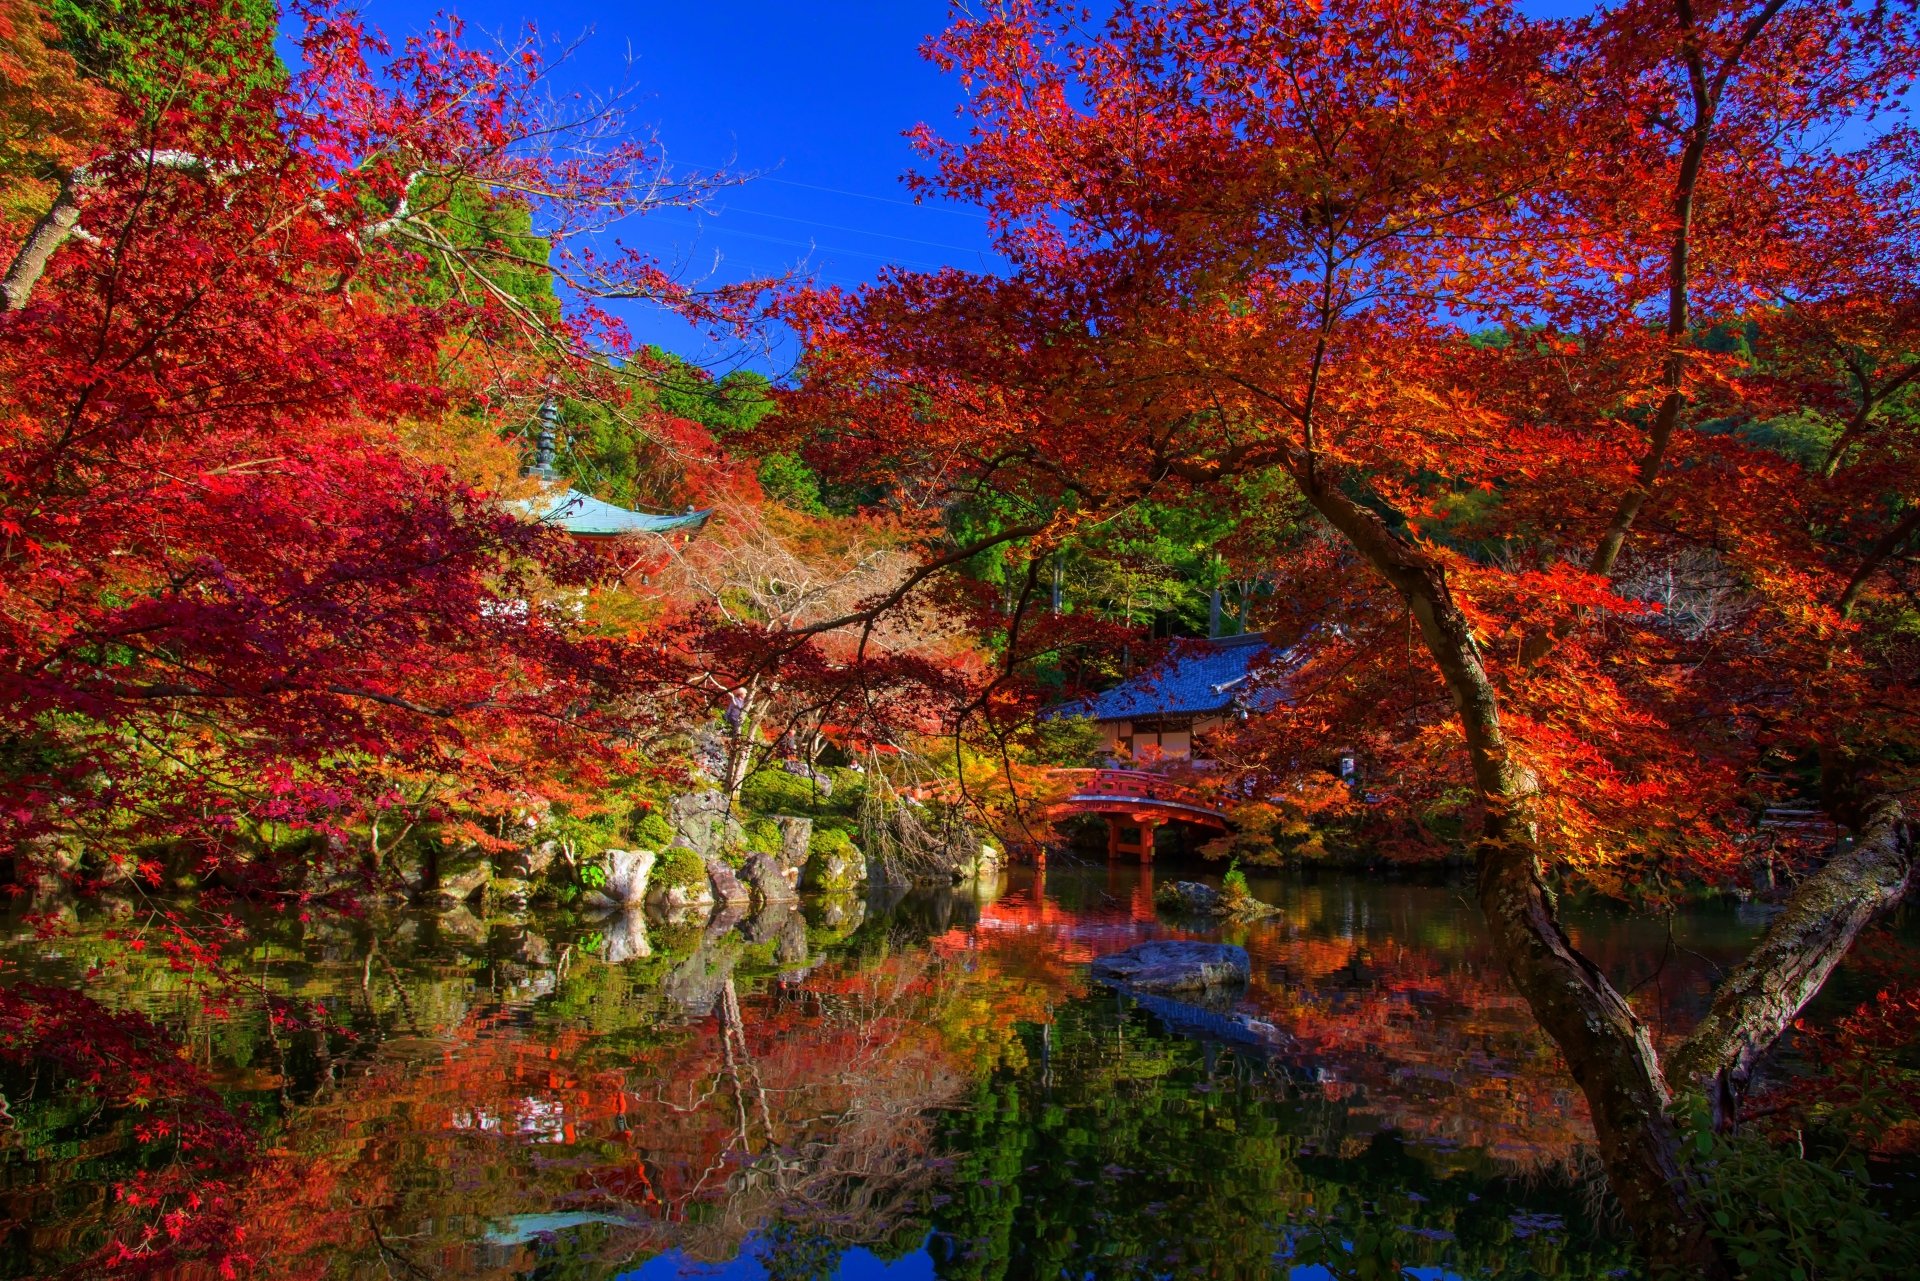 Man Made Japanese Garden 4k Ultra HD Wallpaper